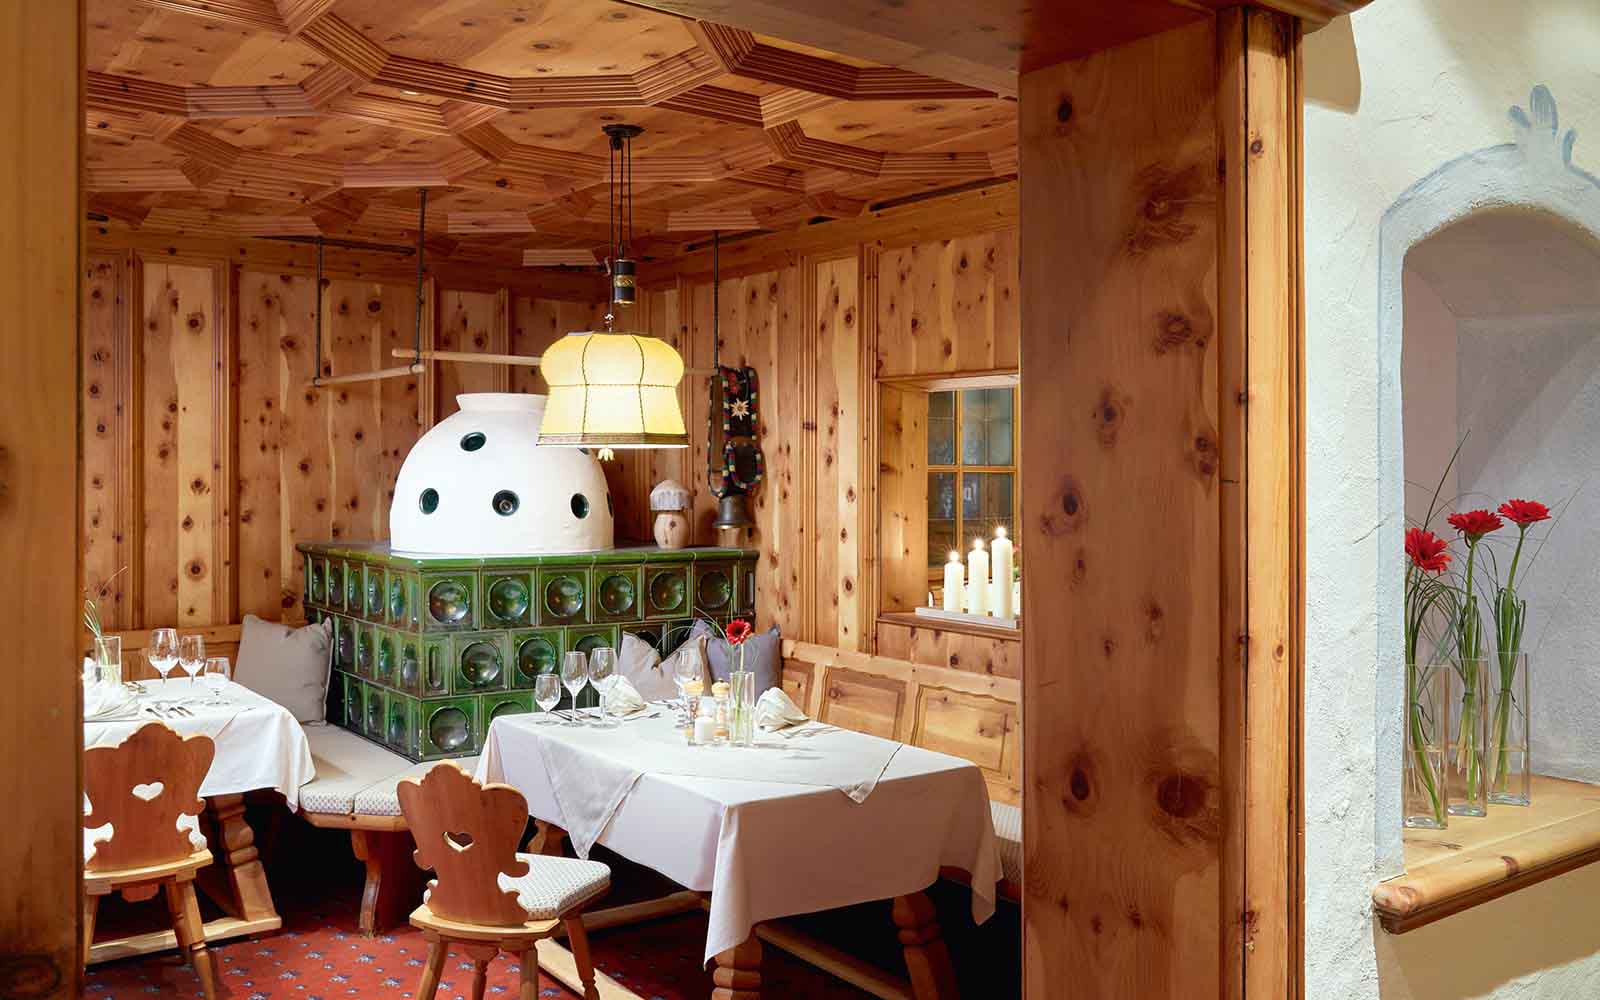 Hotel Tirolerhof Ehrwald village Zugspitzarena Tyrol Austria